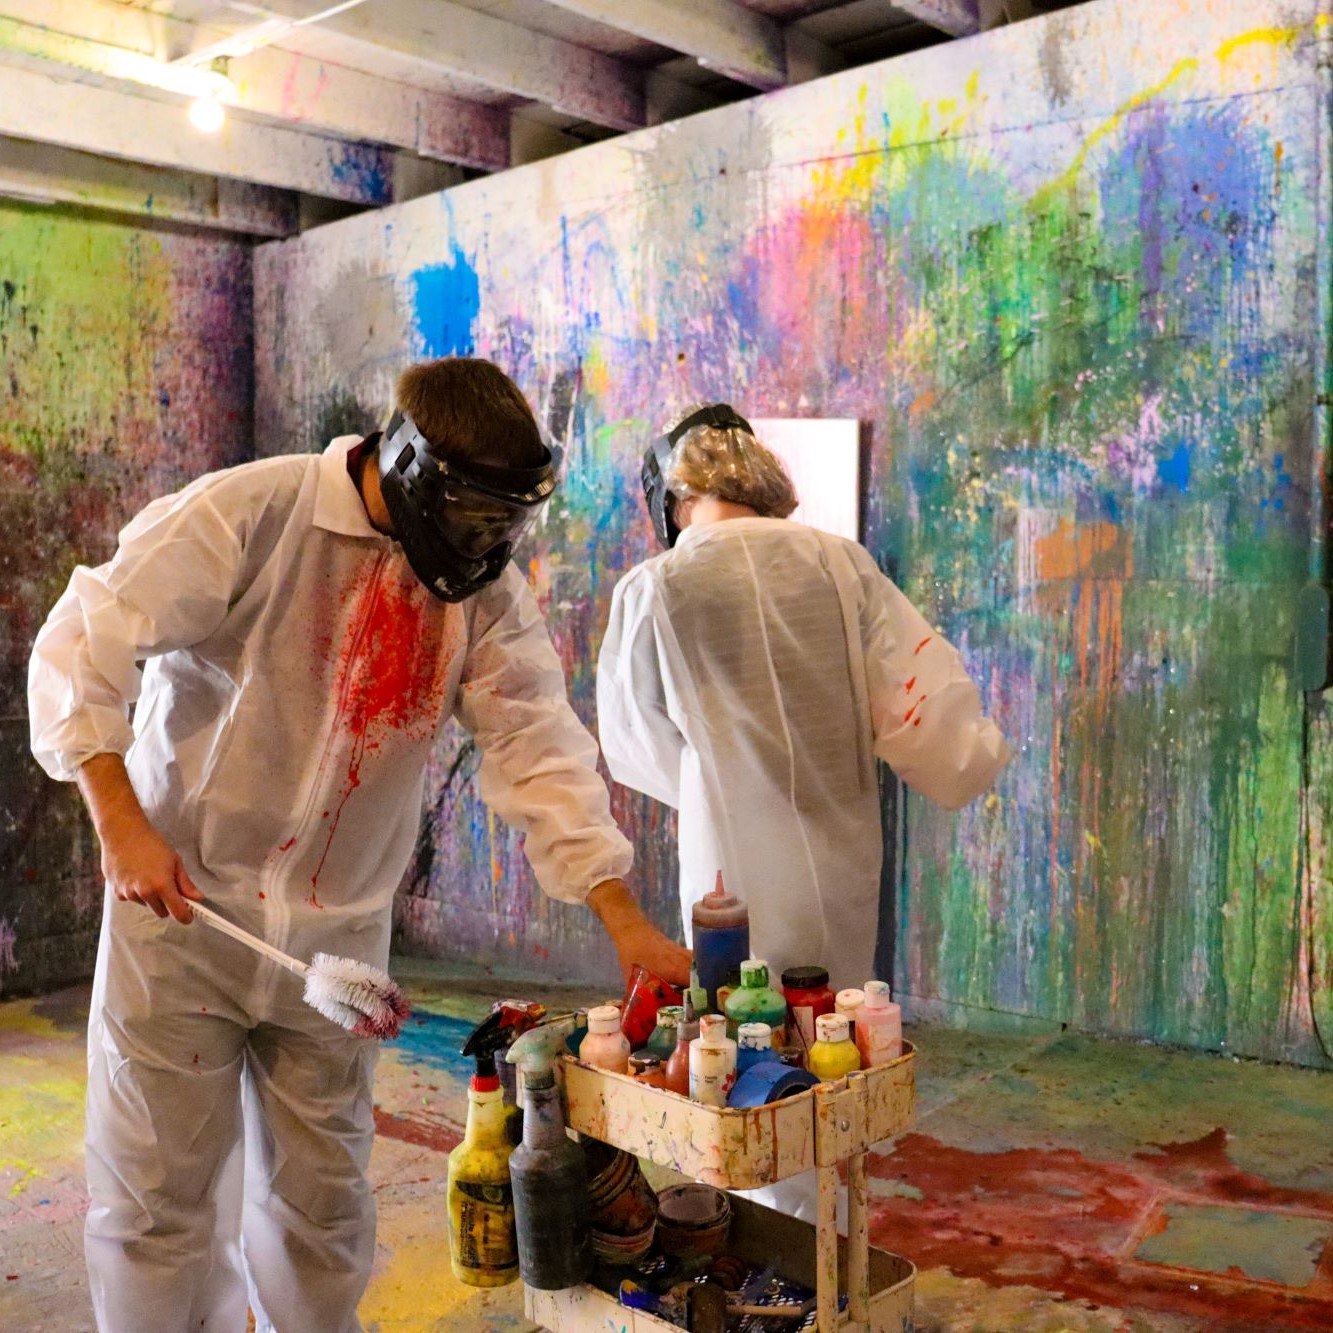 Paint Splatter Room at For Arts Sake